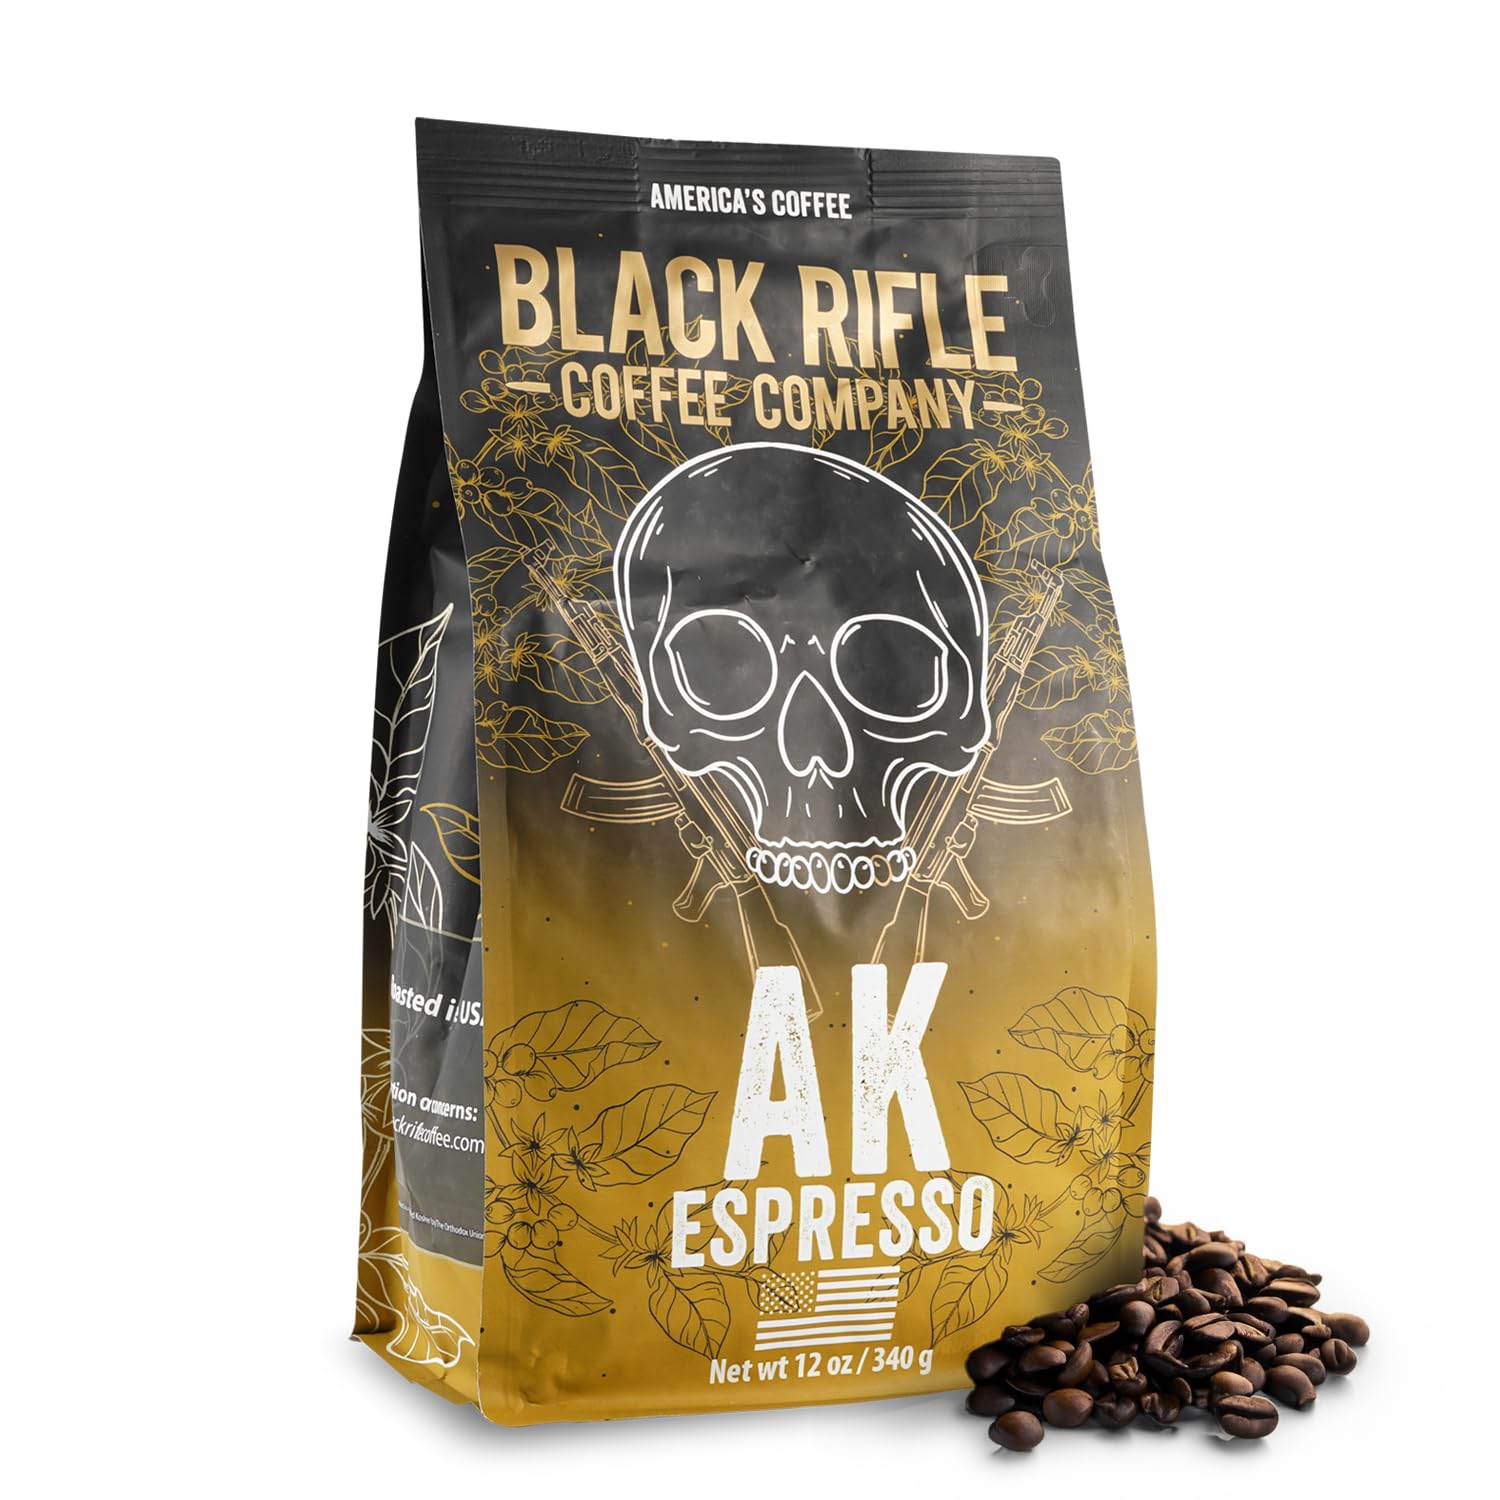 Black Rifle Coffee Company via Amazon, AK-47 Espresso,100% Arabica Coffee,Colombian Supremo Roasted Dark, Whole Bean 12 oz Bag $11.69